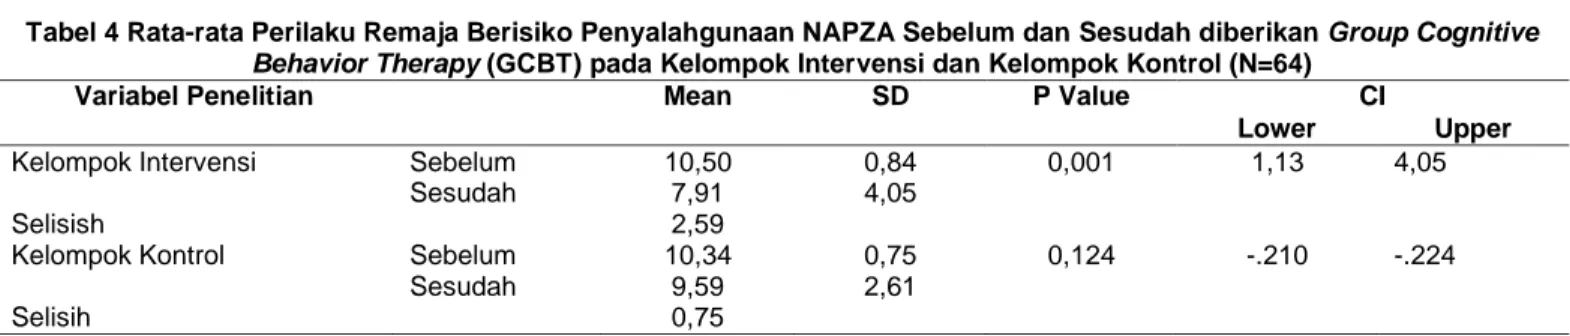 Tabel 4 Rata-rata Perilaku Remaja Berisiko Penyalahgunaan NAPZA Sebelum dan Sesudah diberikan Group Cognitive  Behavior Therapy (GCBT) pada Kelompok Intervensi dan Kelompok Kontrol (N=64) 